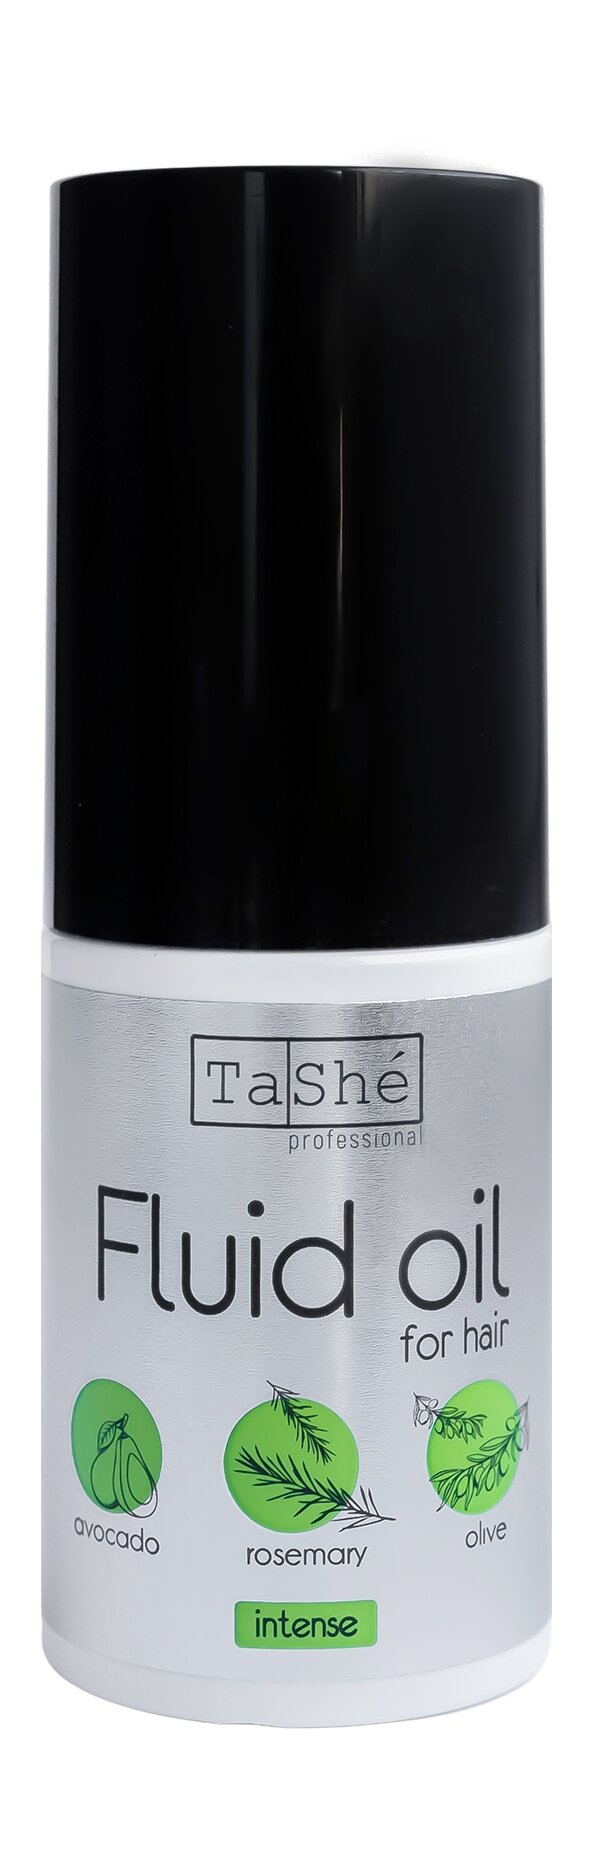 Интенсивное укрепляющее масло-флюид для волос Tashe Professional Fluid Oil Intense /30 мл/гр.